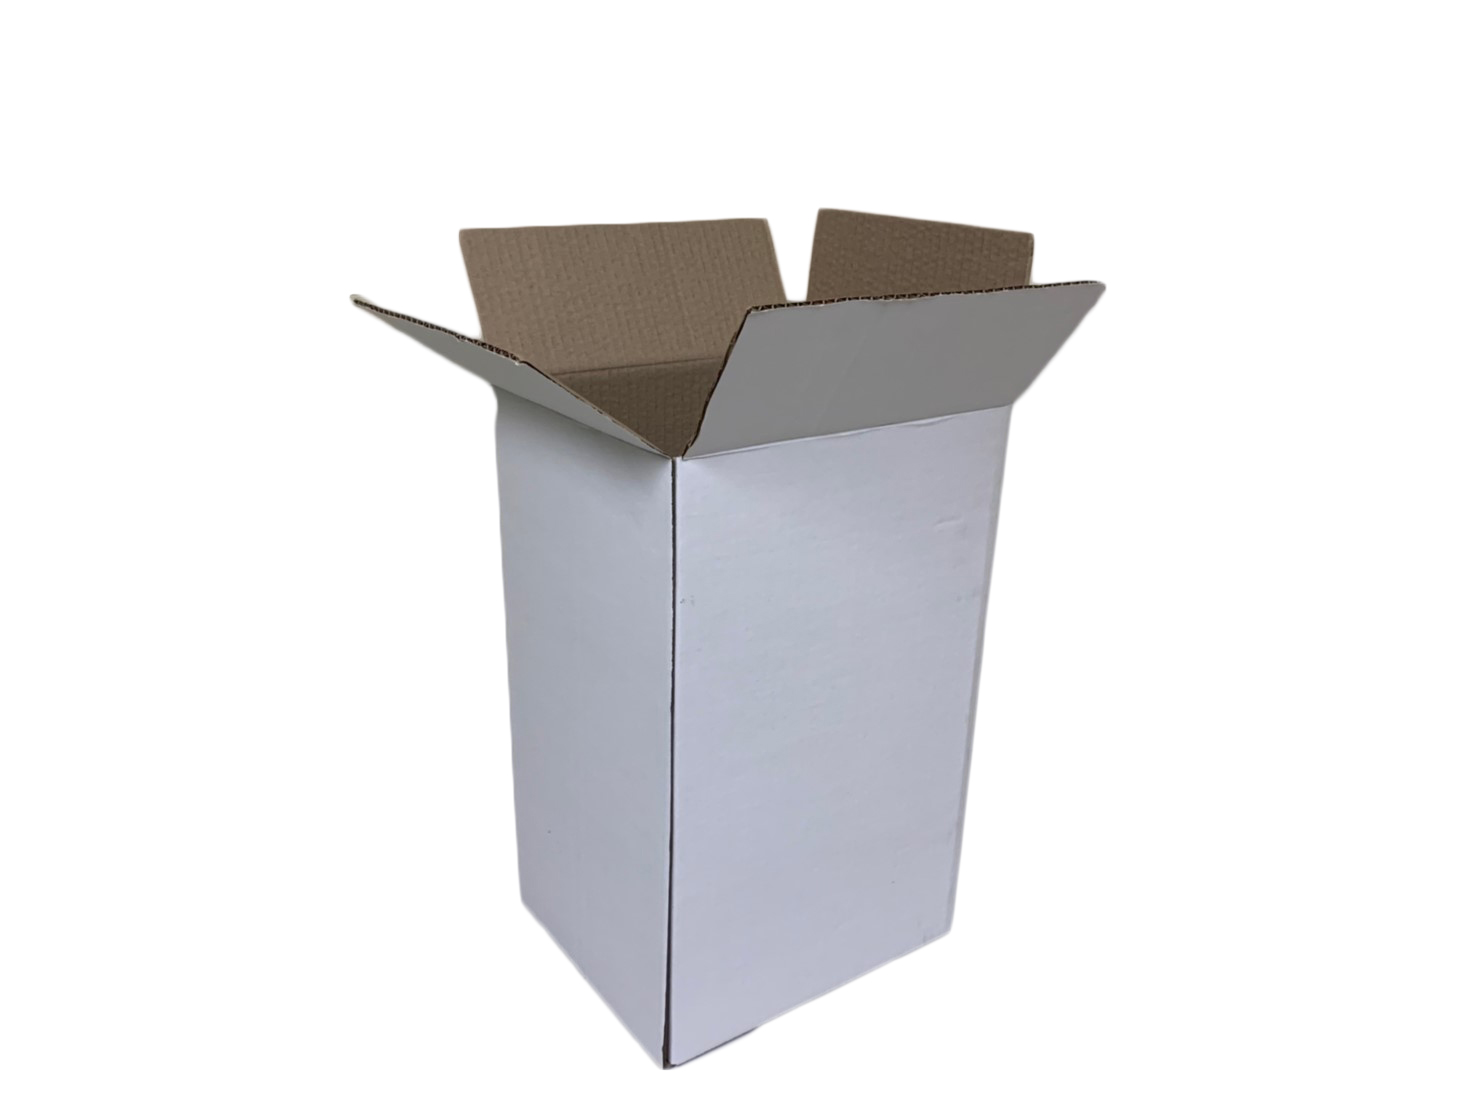 กล่องฝาชน กระดาษขาว ความหนา 170 g/ft2